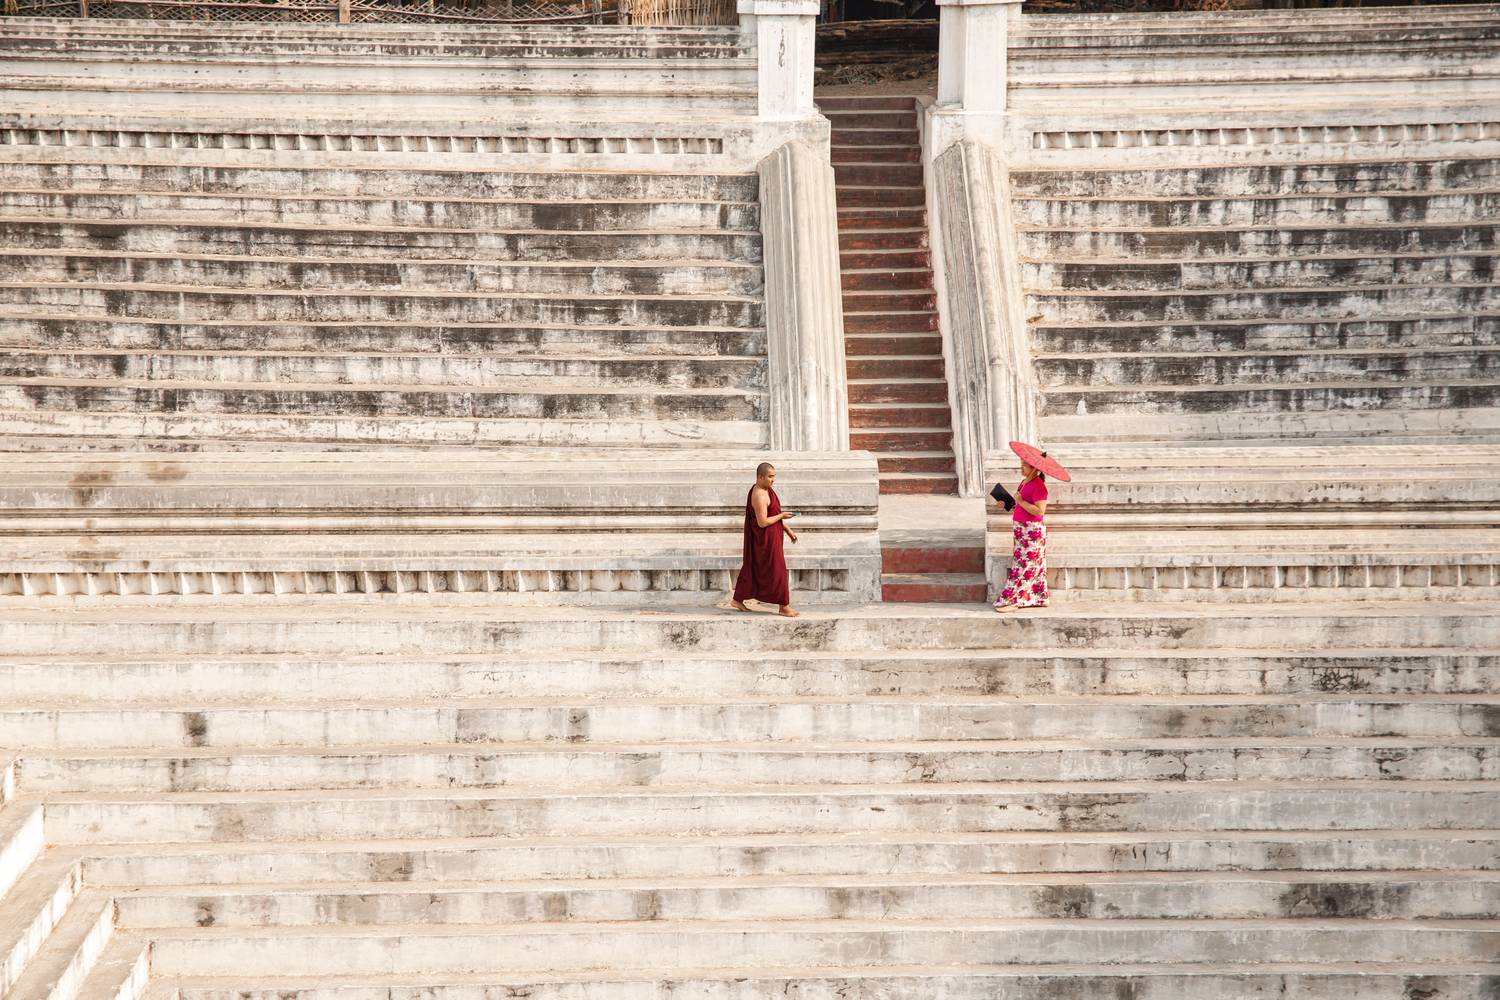 Tempel in Mandalay, Myanmar (Burma) a Miro May